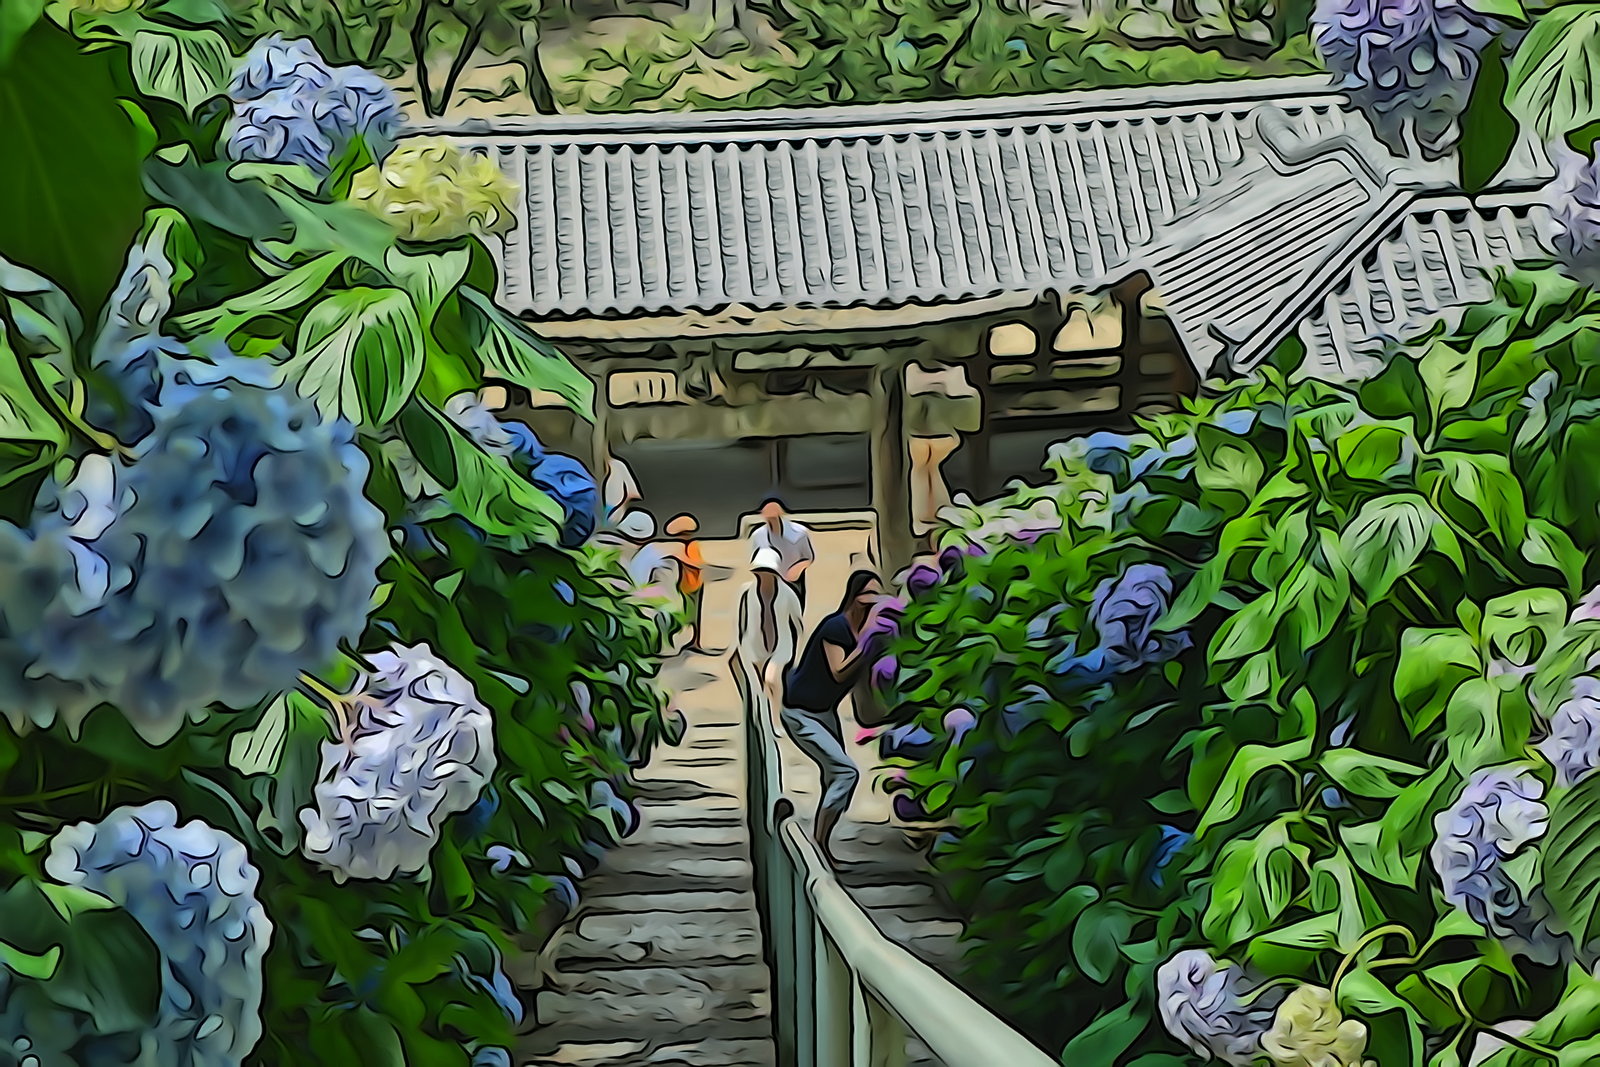 吉備津神社の紫陽花をupなう 神社 紫陽花 吉備津神社 アート 岡山後楽園を写そう